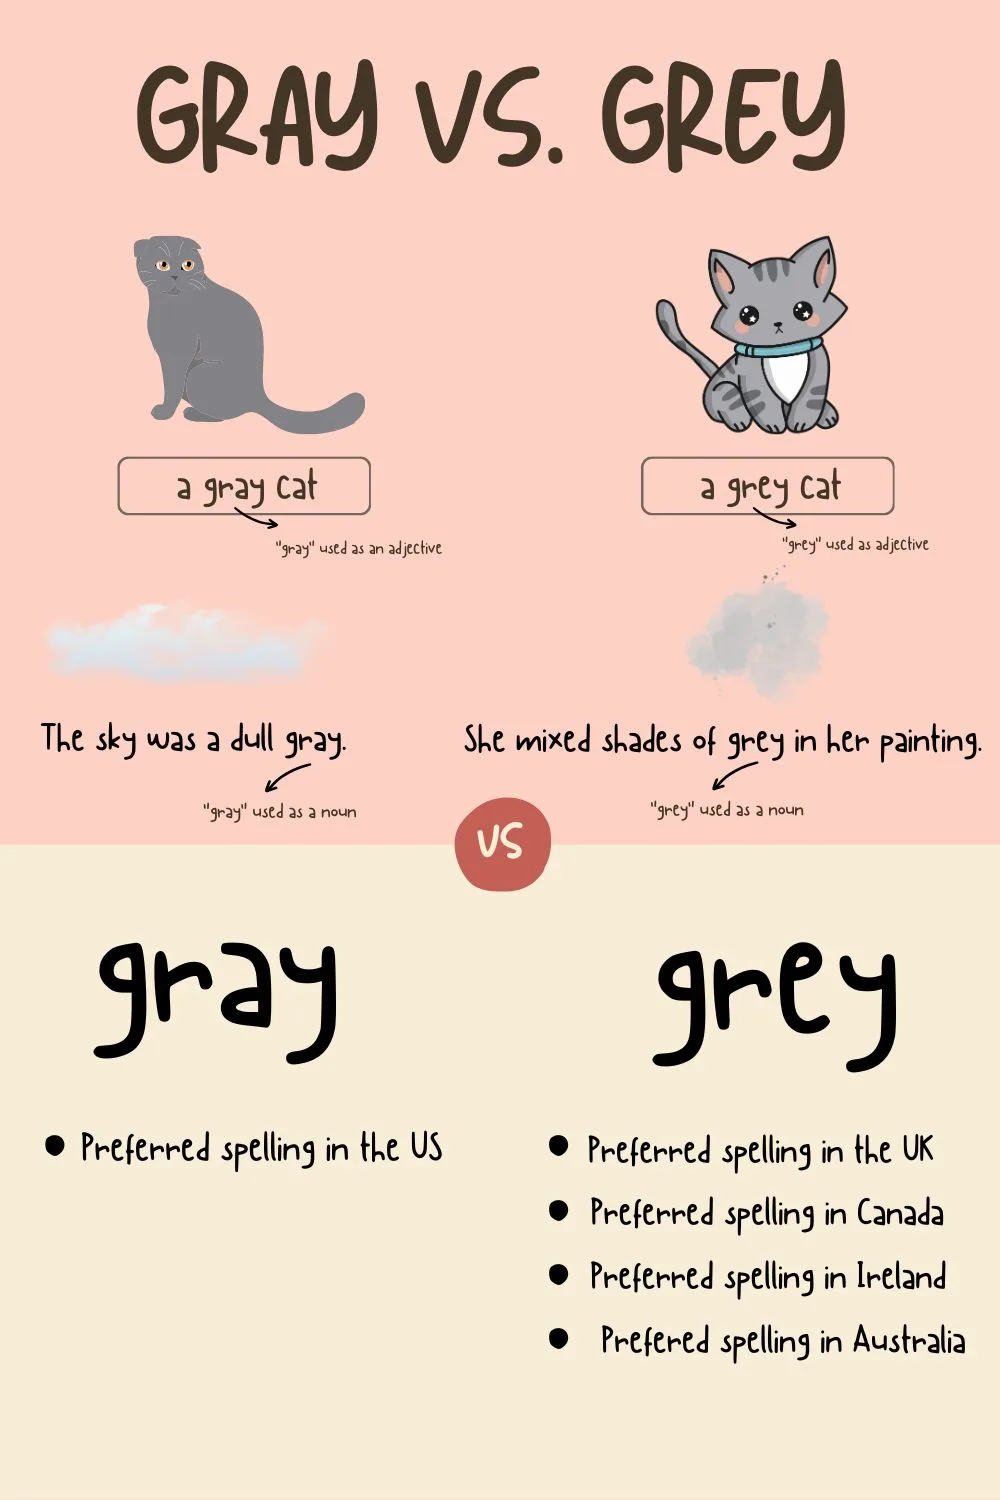 Gray vs. Grey Use